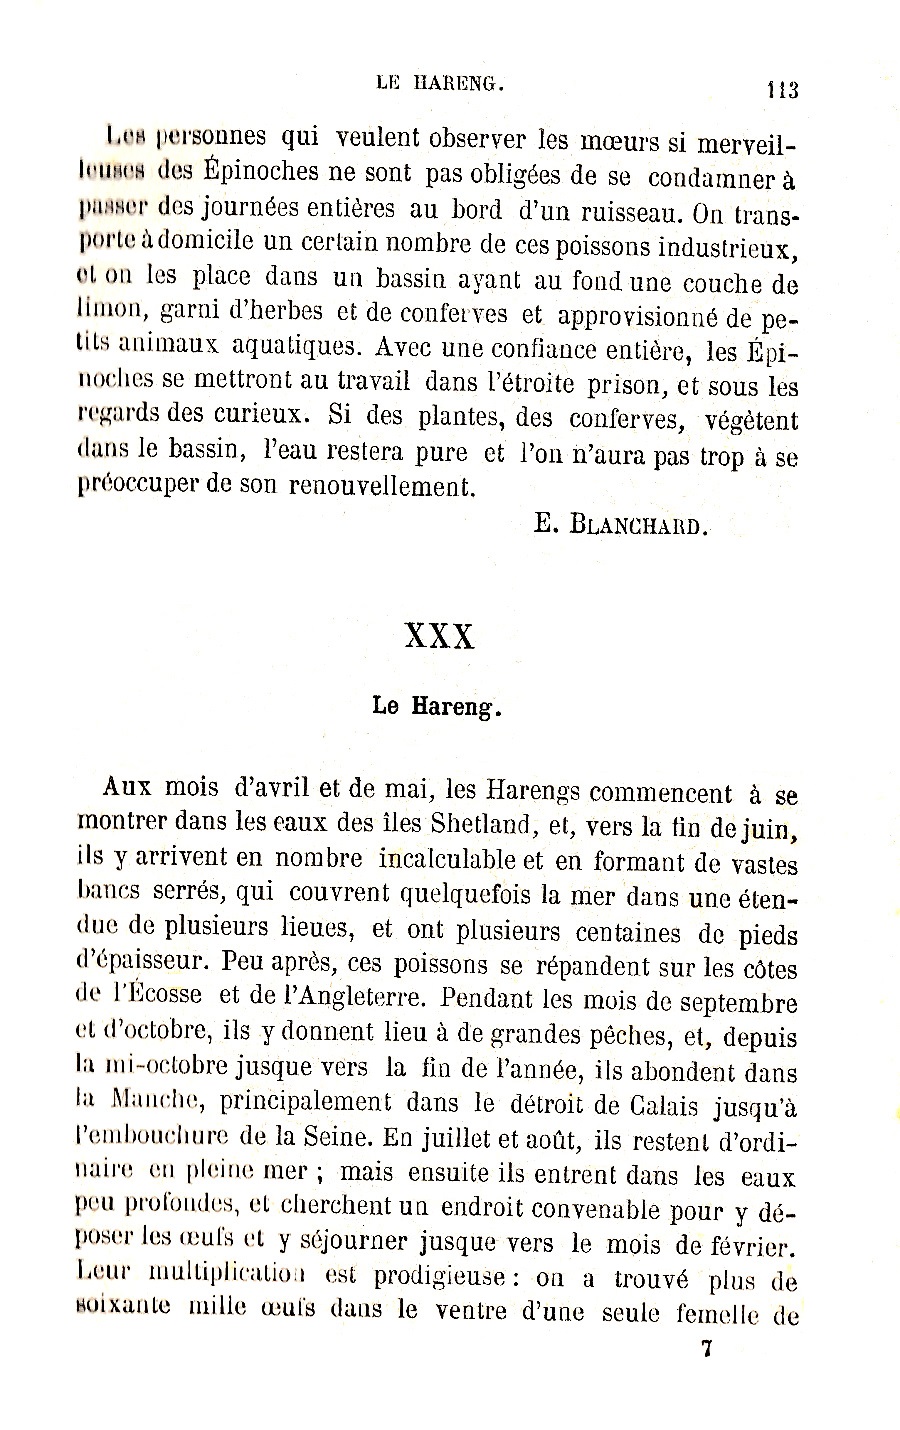 extrait de Zoologie de Fabre publié en 1872, page 113